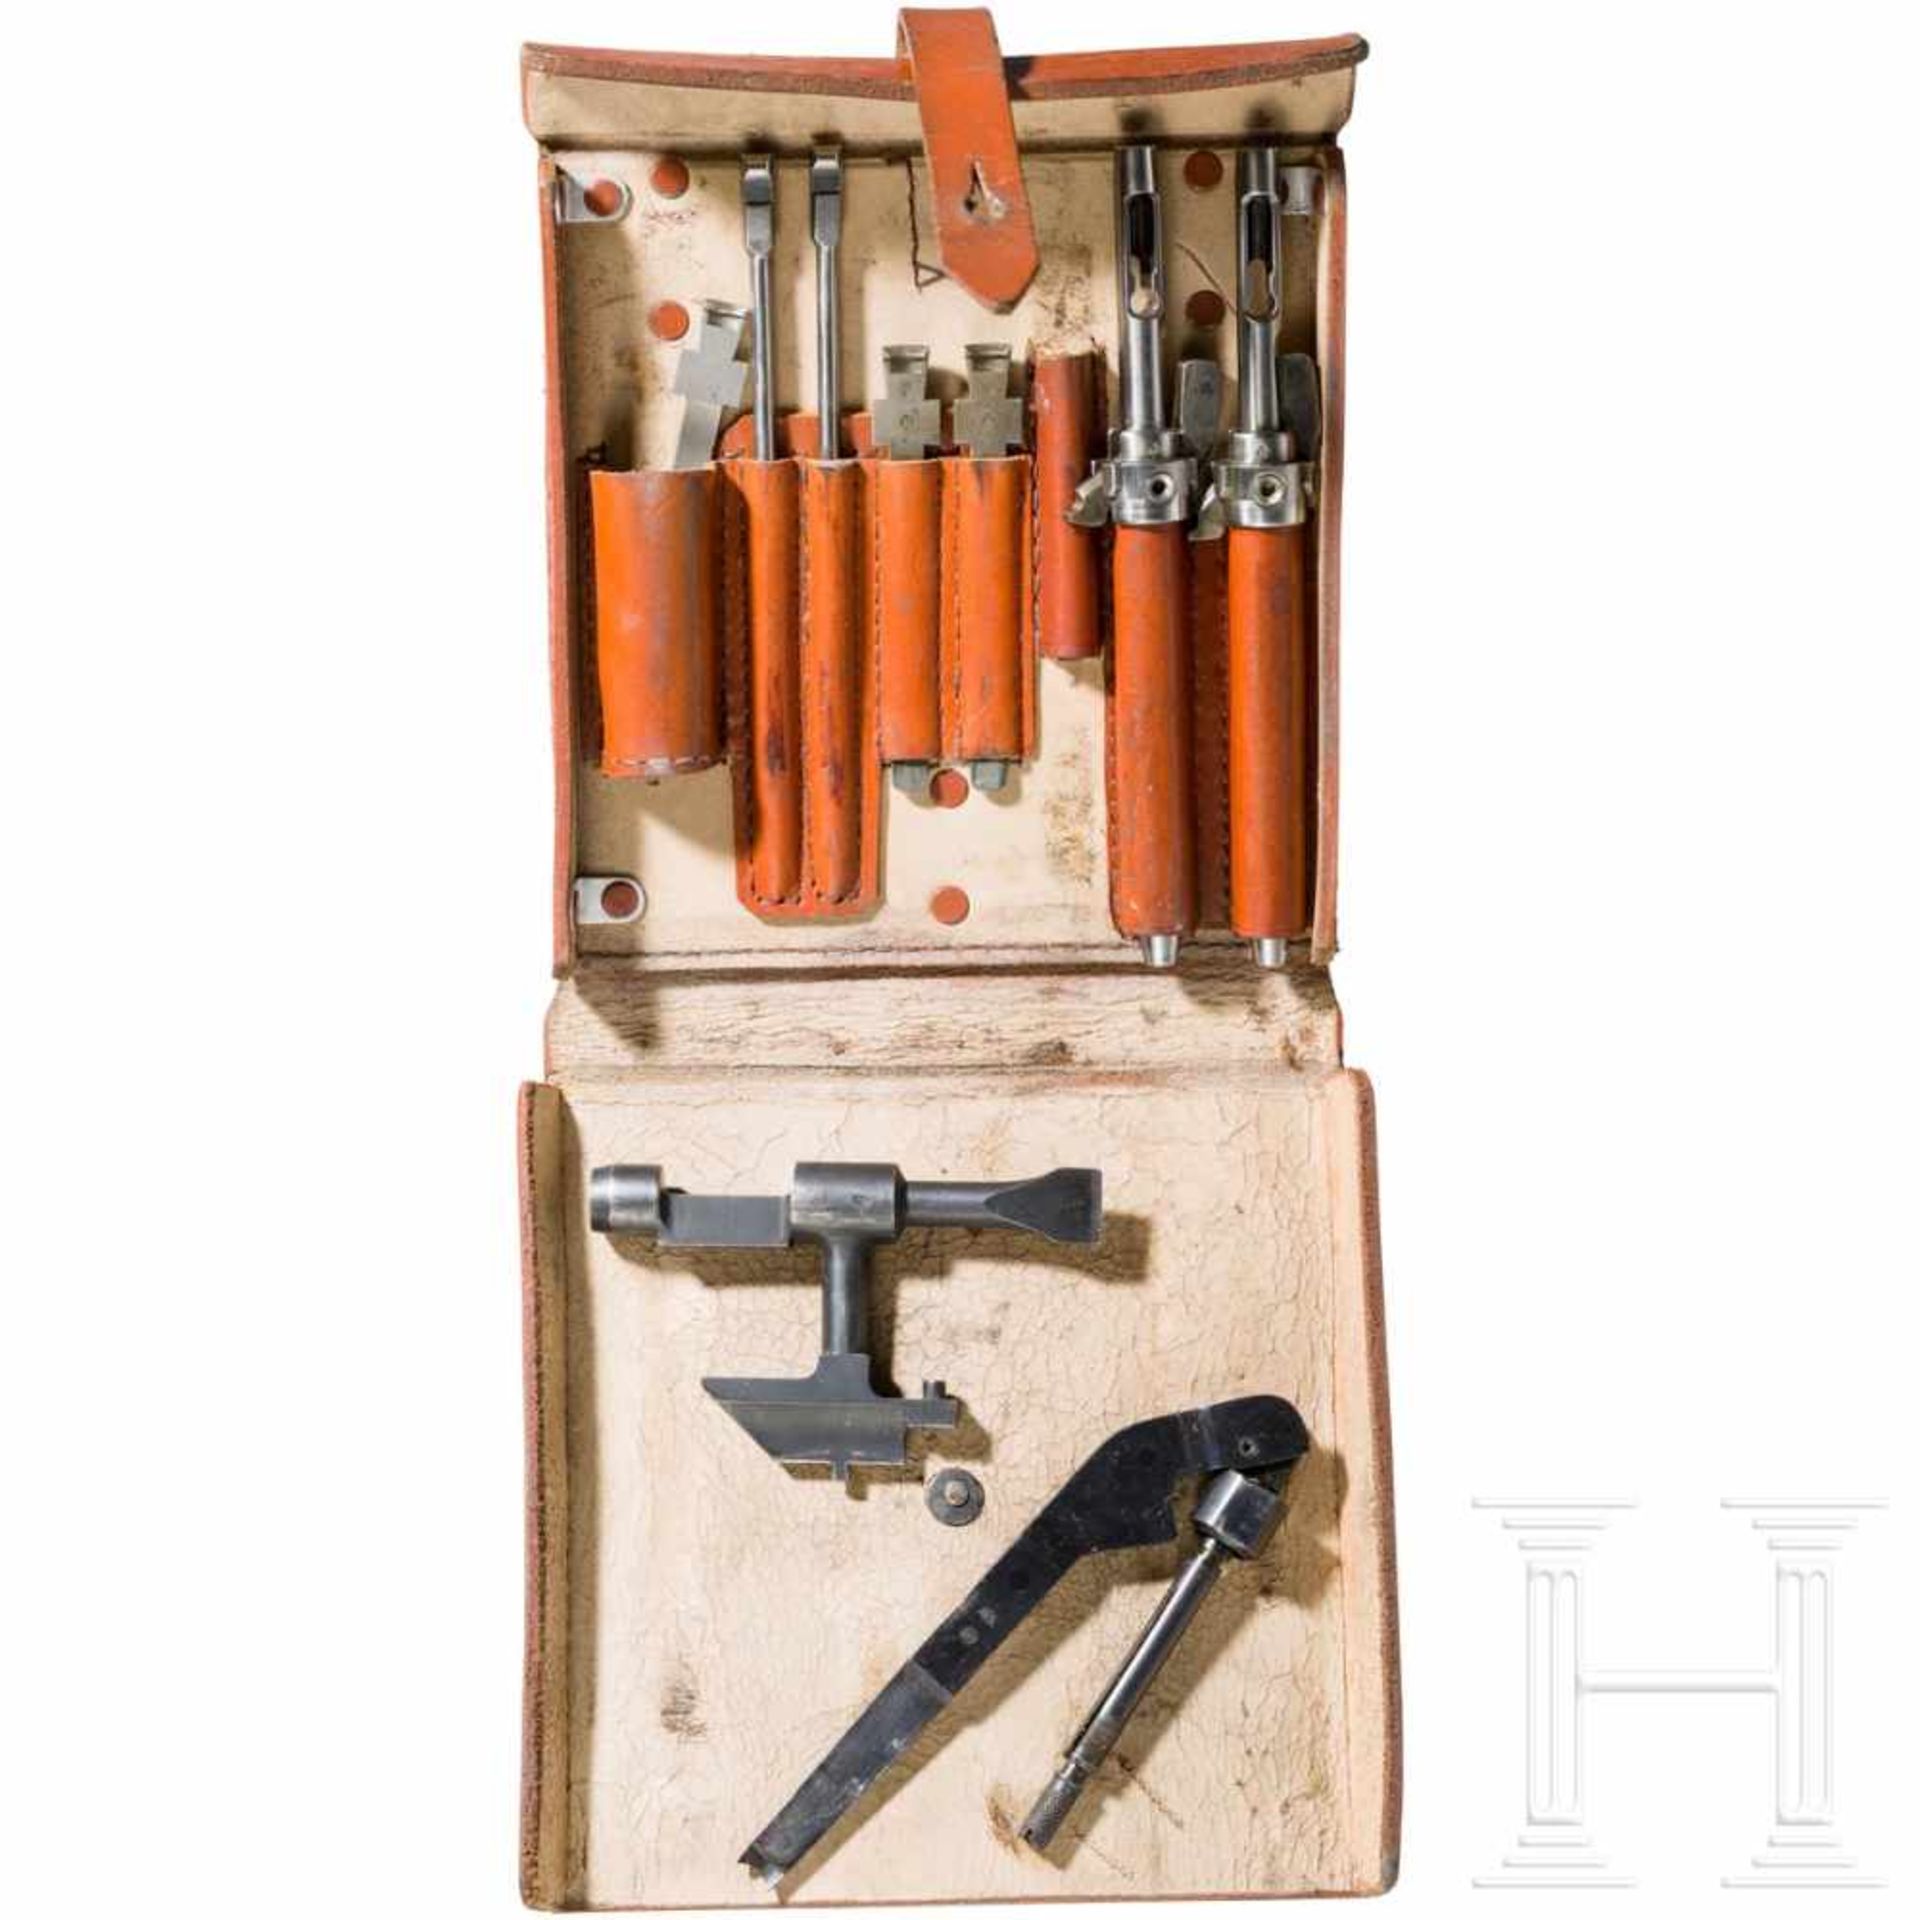 A tool pouch for the MG 15 machine gunBraune Ledertasche mit Abnahme- und Herstellerstempelung von